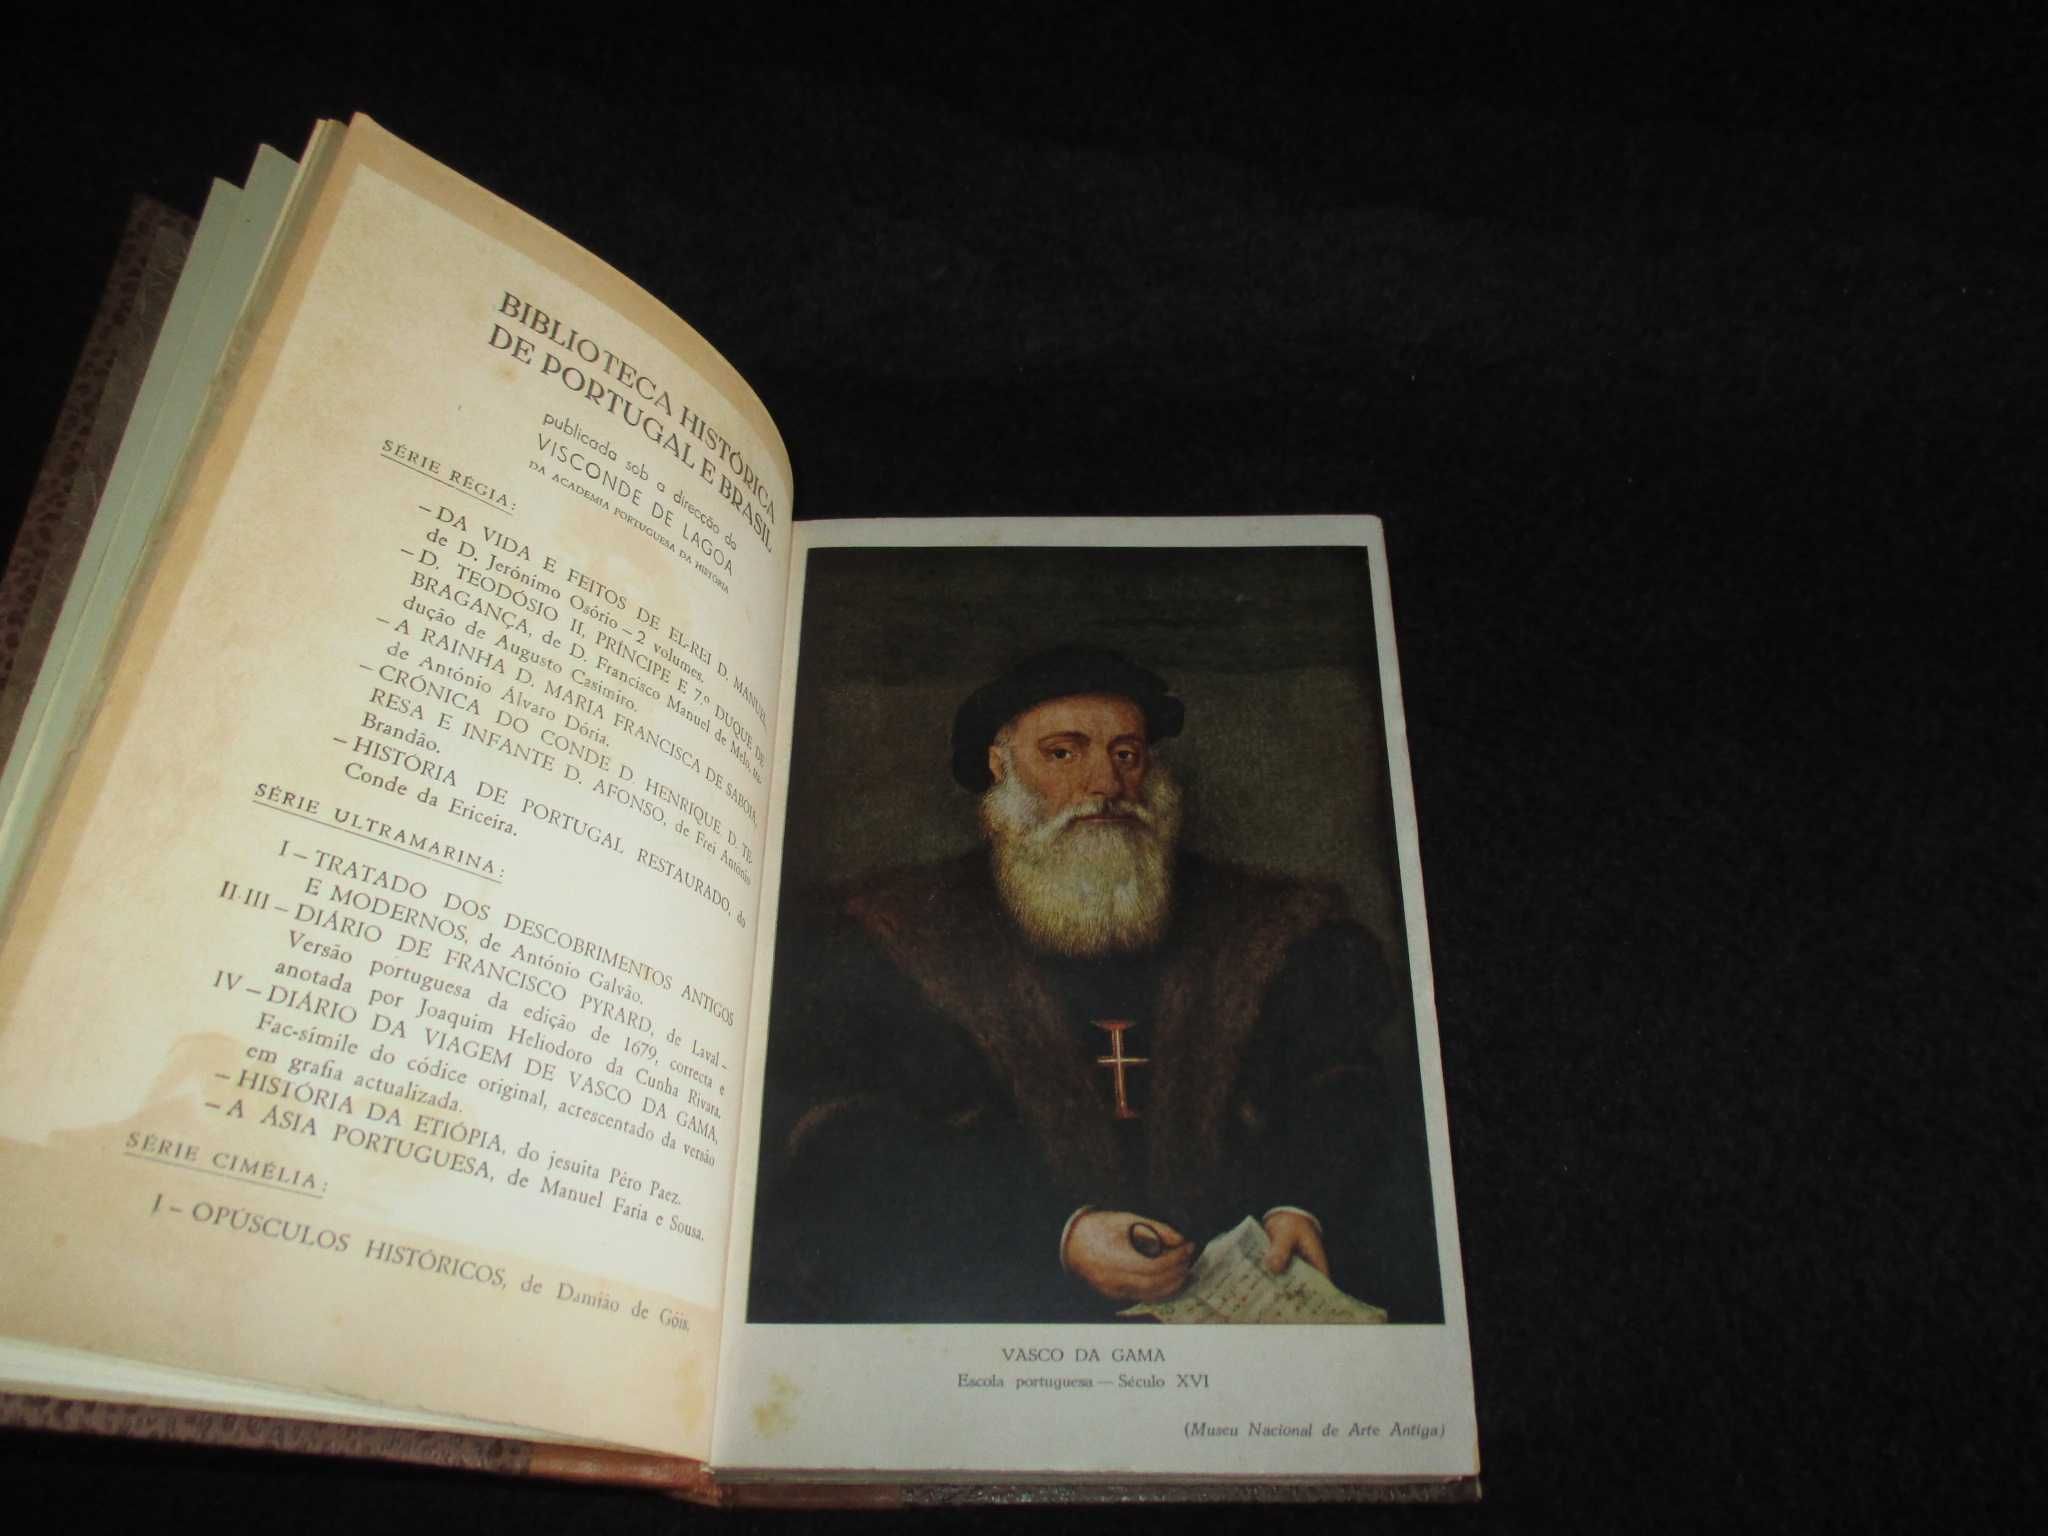 Livros Diário da Viagem de Vasco da Gama Encadernação de Luxo